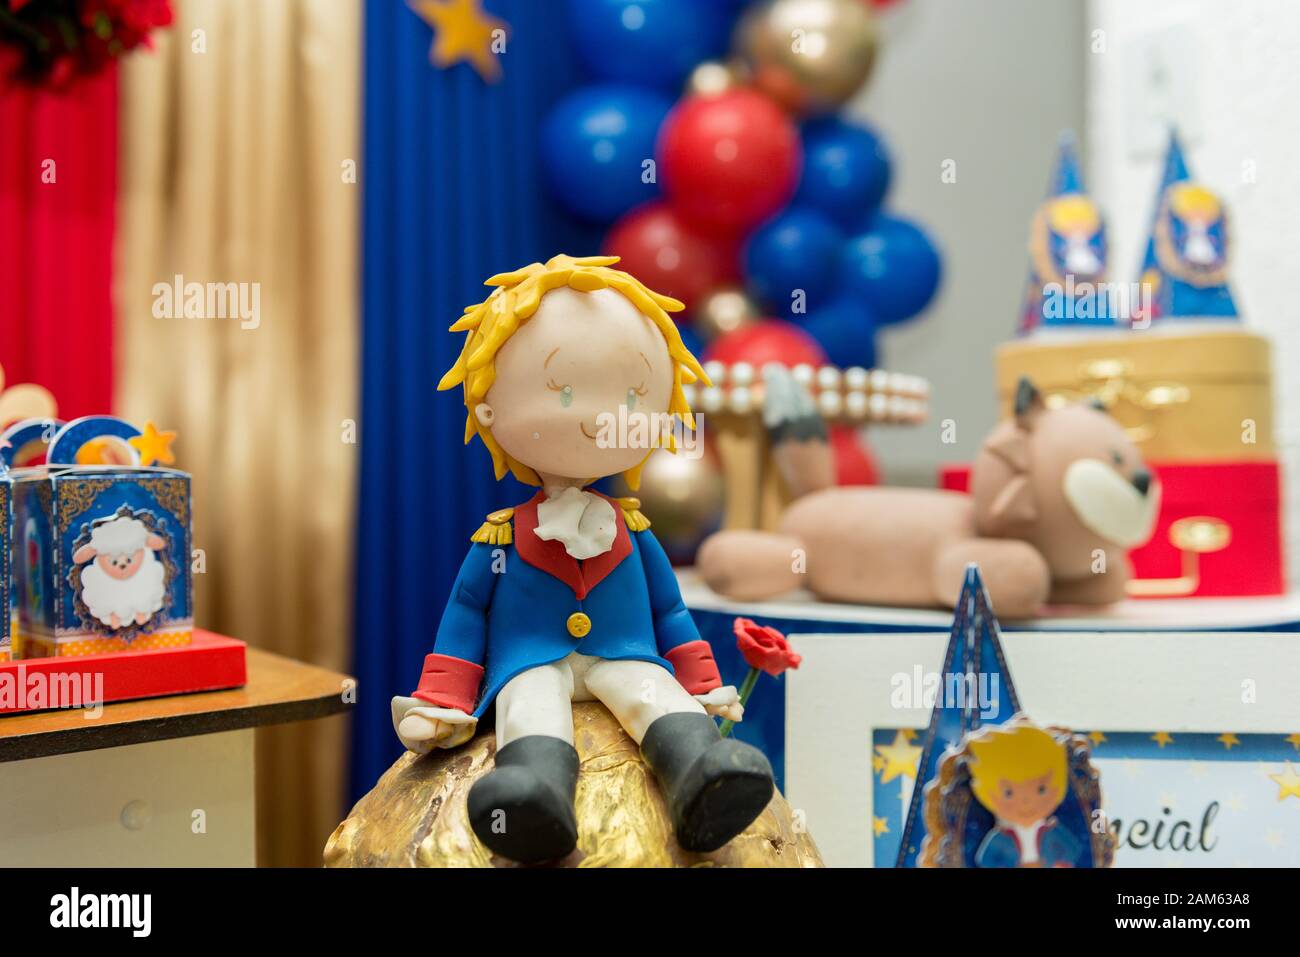 6 globos azul pastel de 1 año, decoraciones de fiesta de 1er cumpleaños,  globos de 1er cumpleaños para niños, decoraciones de globos de fiesta azul,  1er cumpleaños -  México